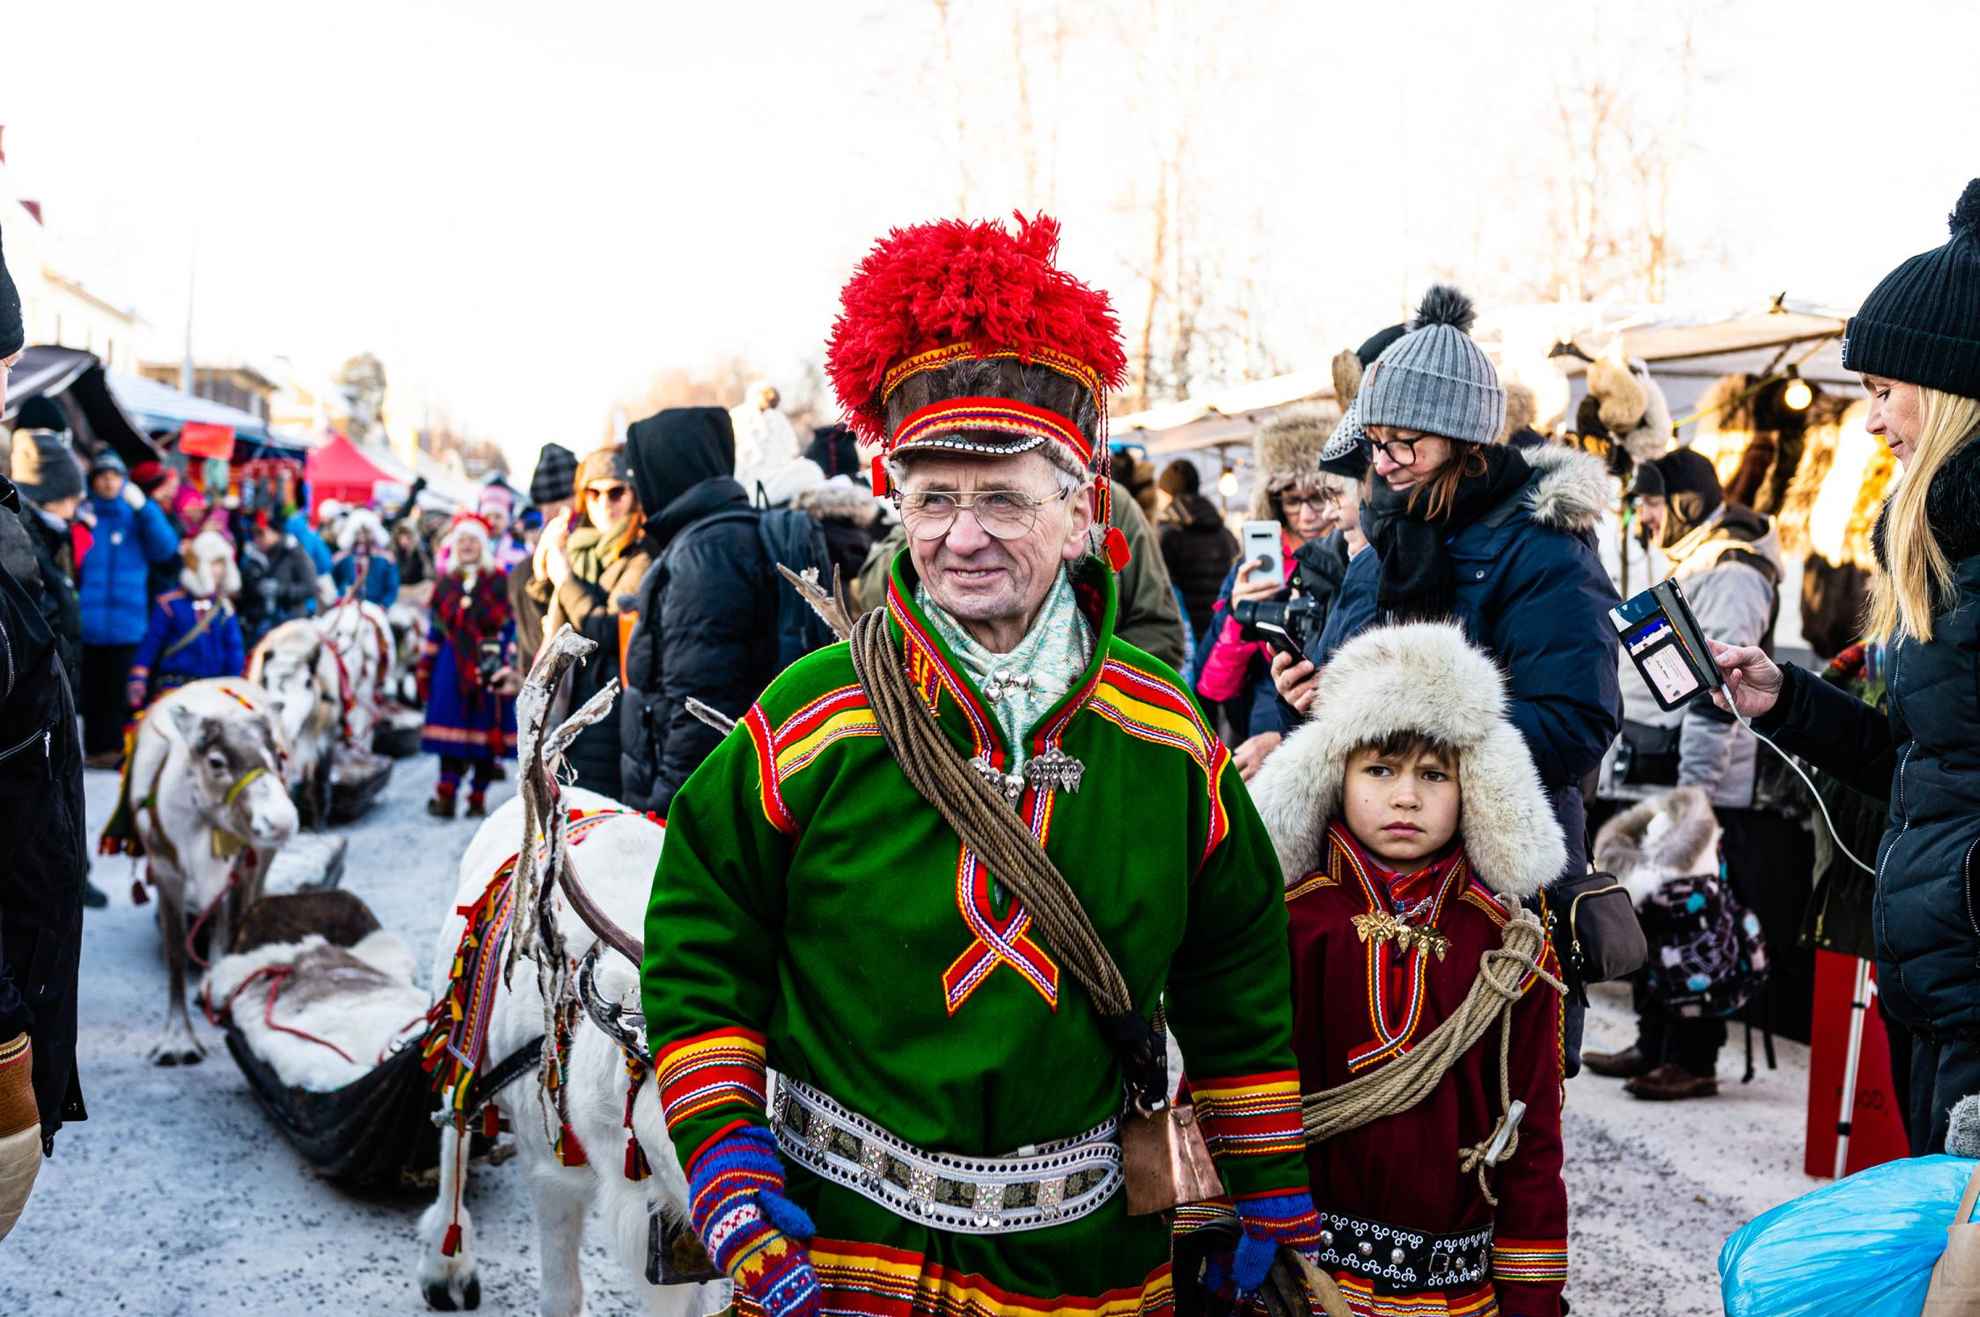 Per Kuhmunen wearing traditional sami clothing at Jokkmokk Winter Market.